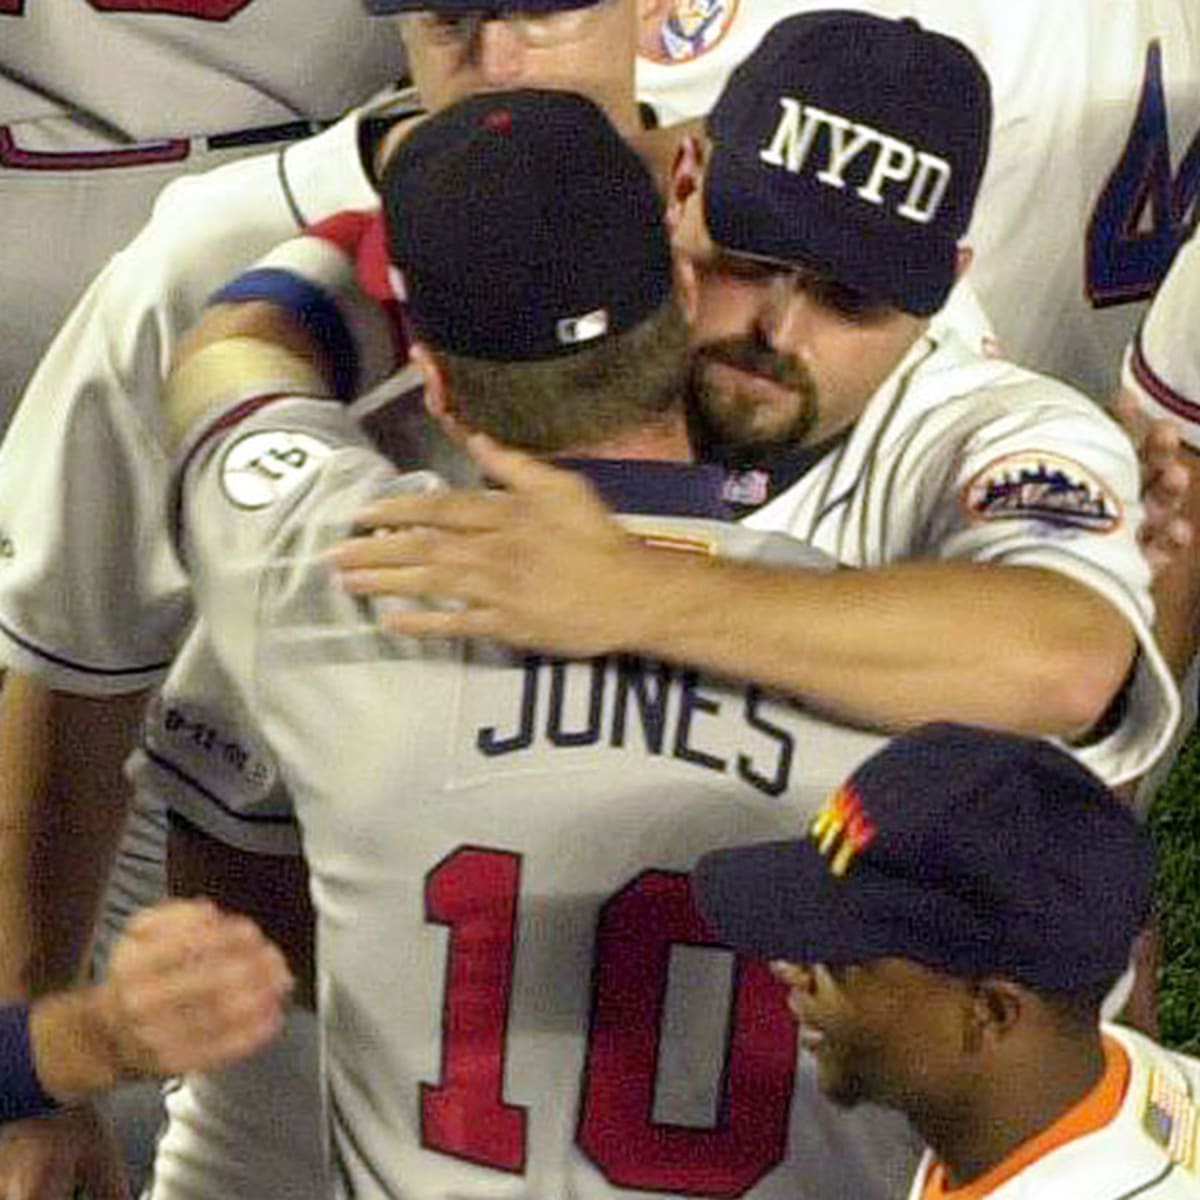 Chipper Jones Braves Mets home runs 1999 - Battery Power